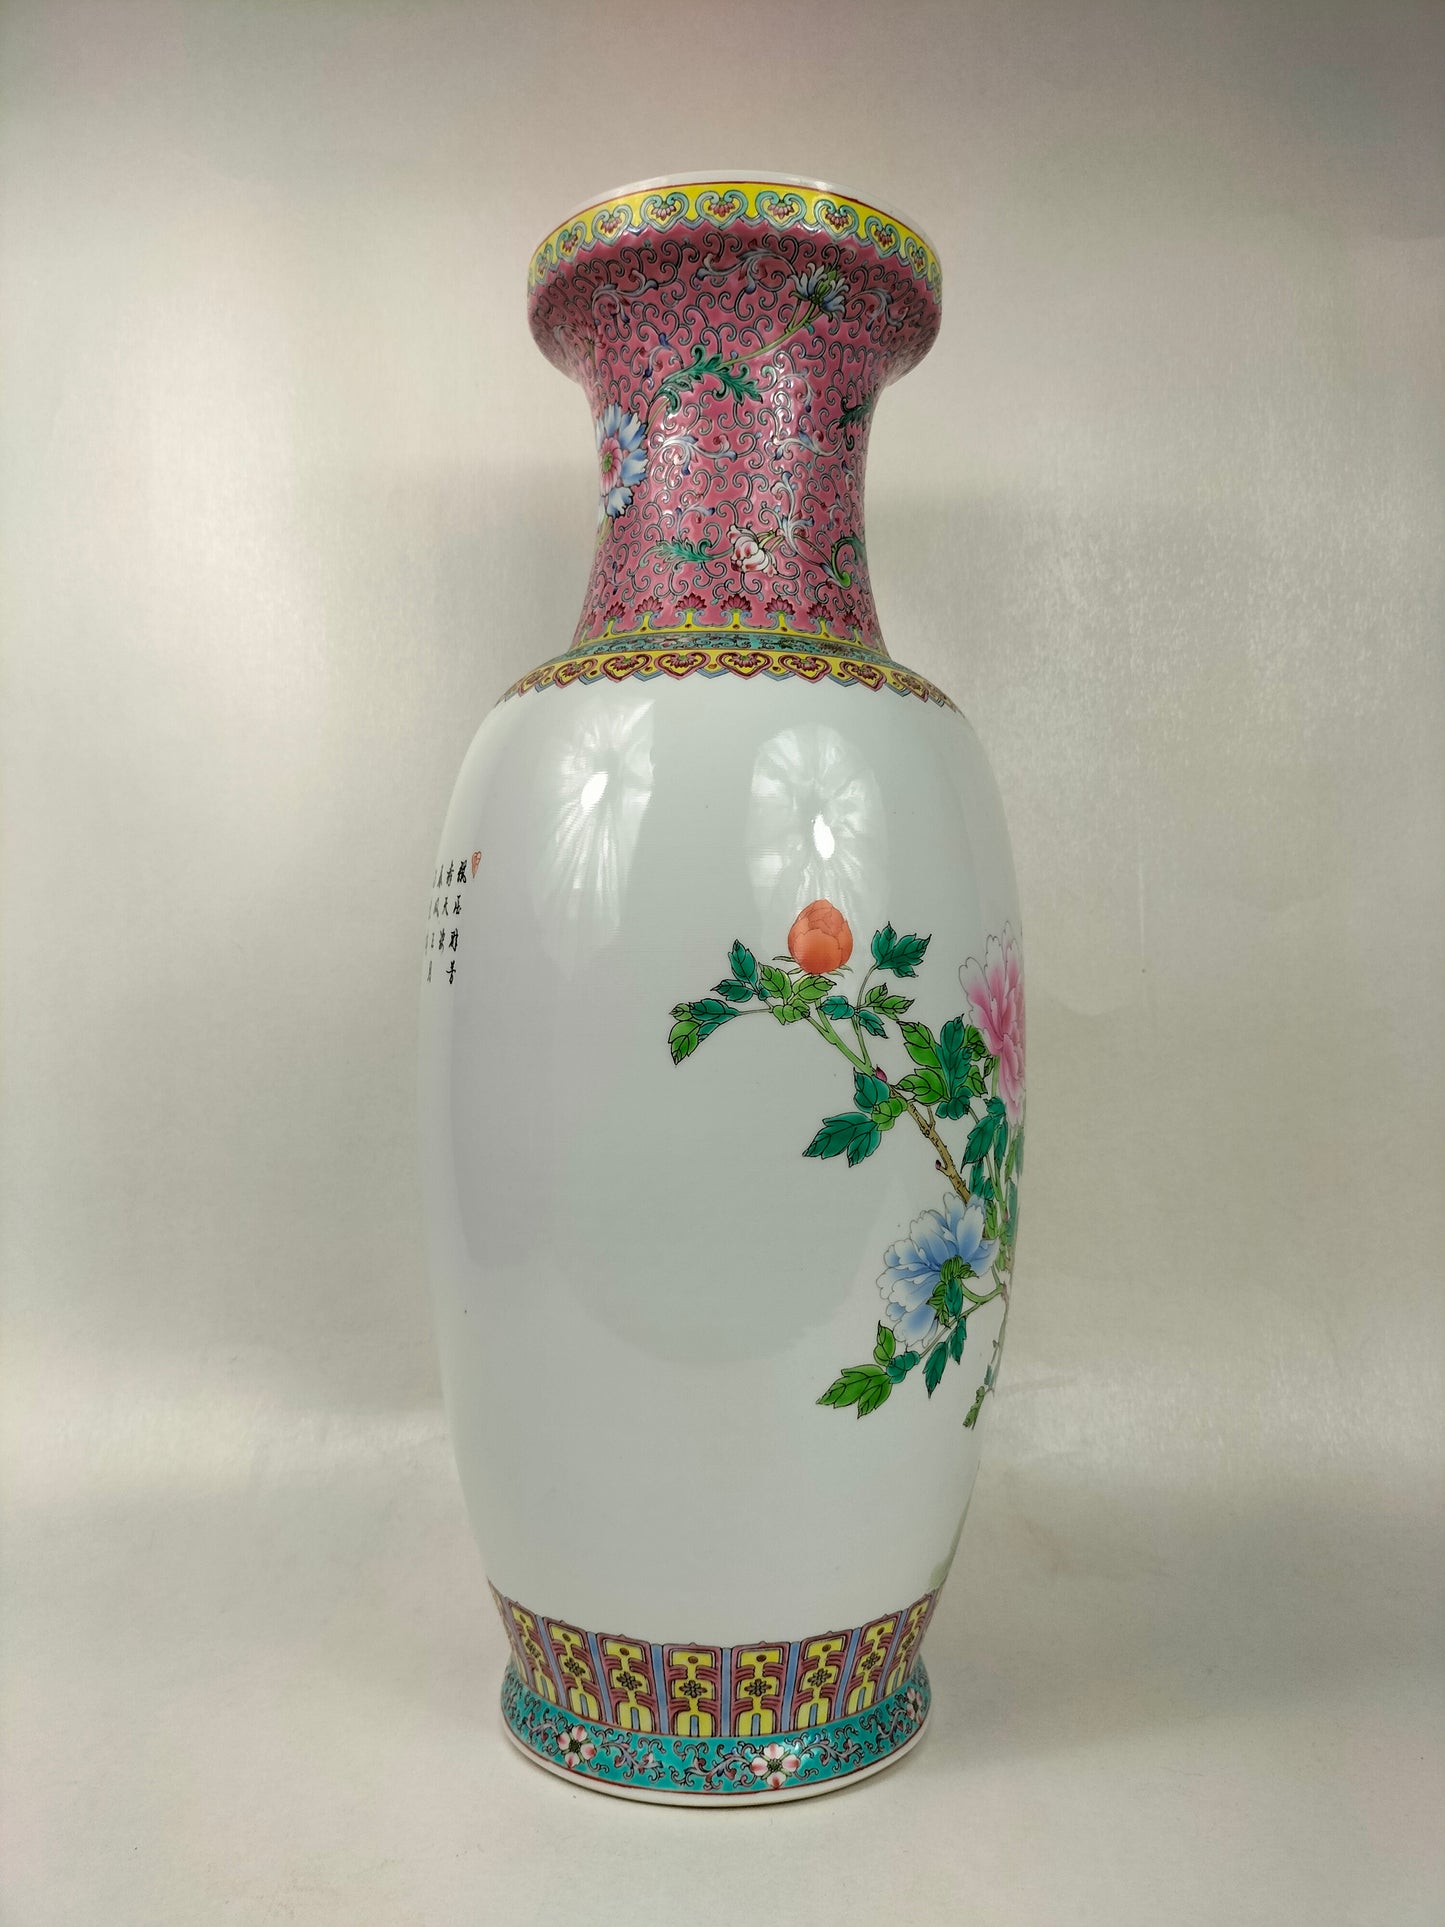 مزهرية ورد عائلية صينية كبيرة مزينة بالزهور // جينغدتشن - القرن العشرين